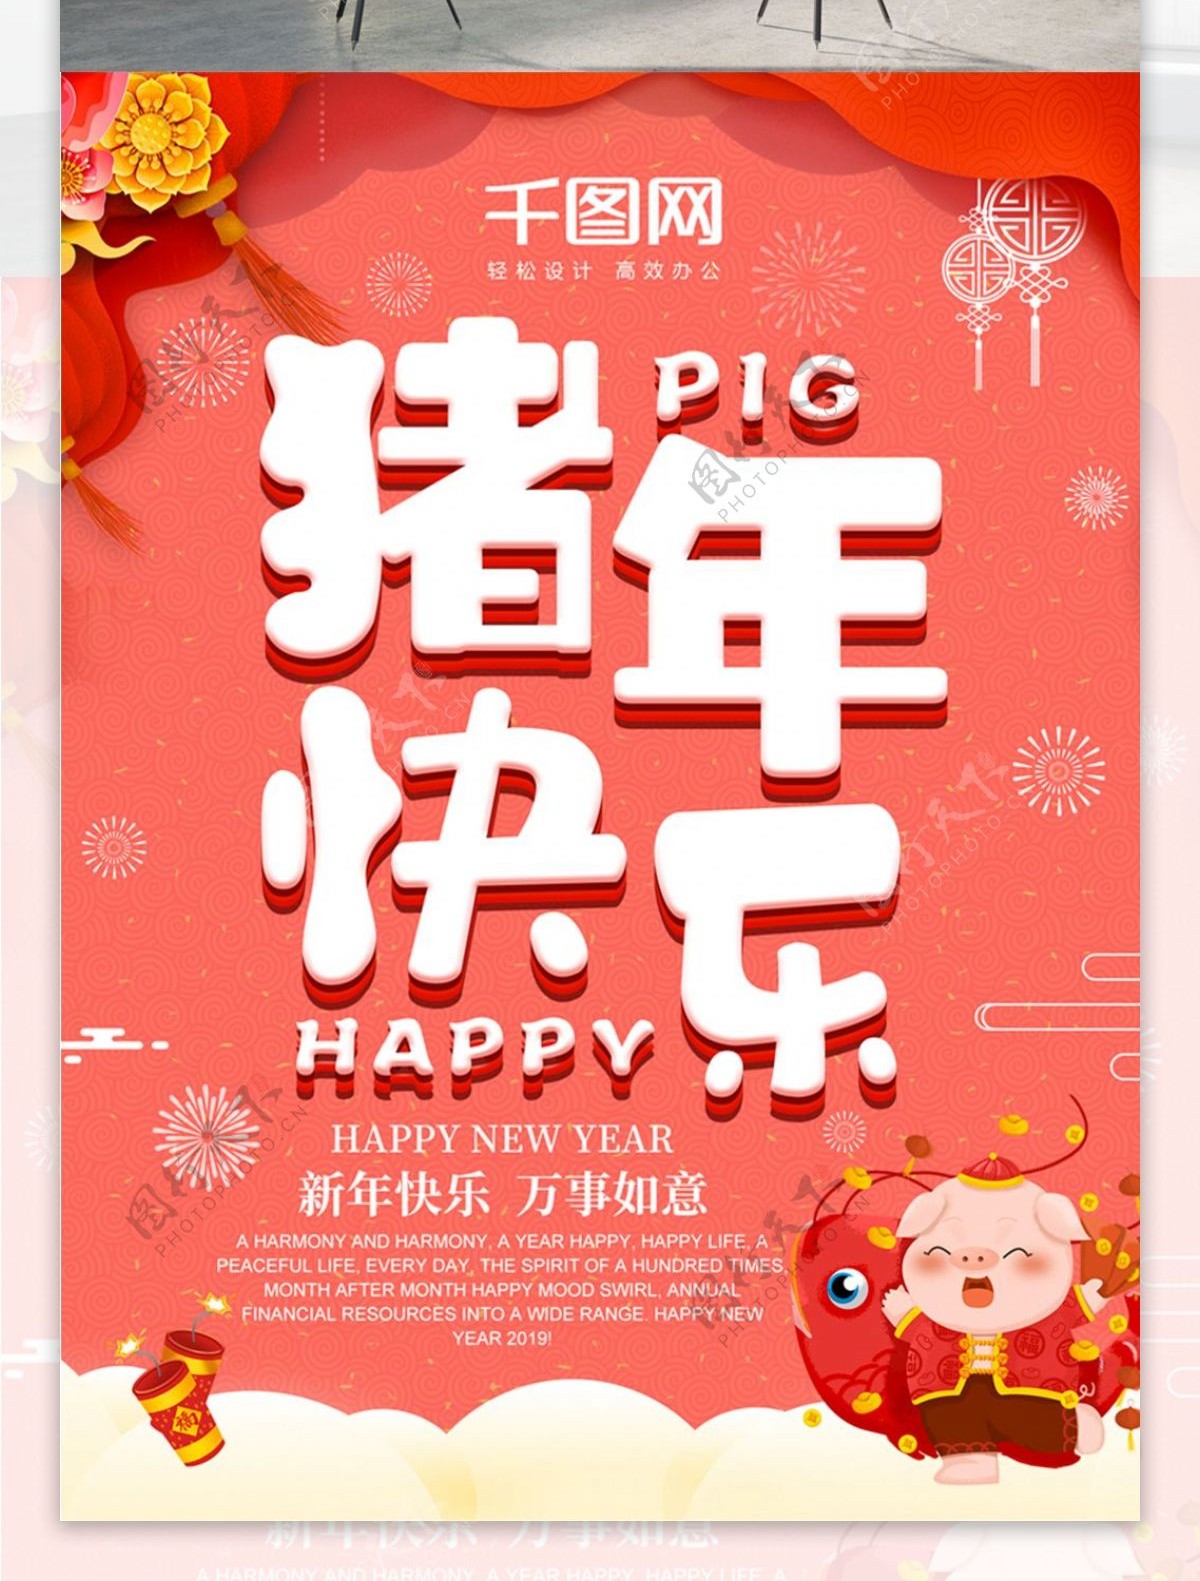 珊瑚红猪年快乐猪年节日宣传海报